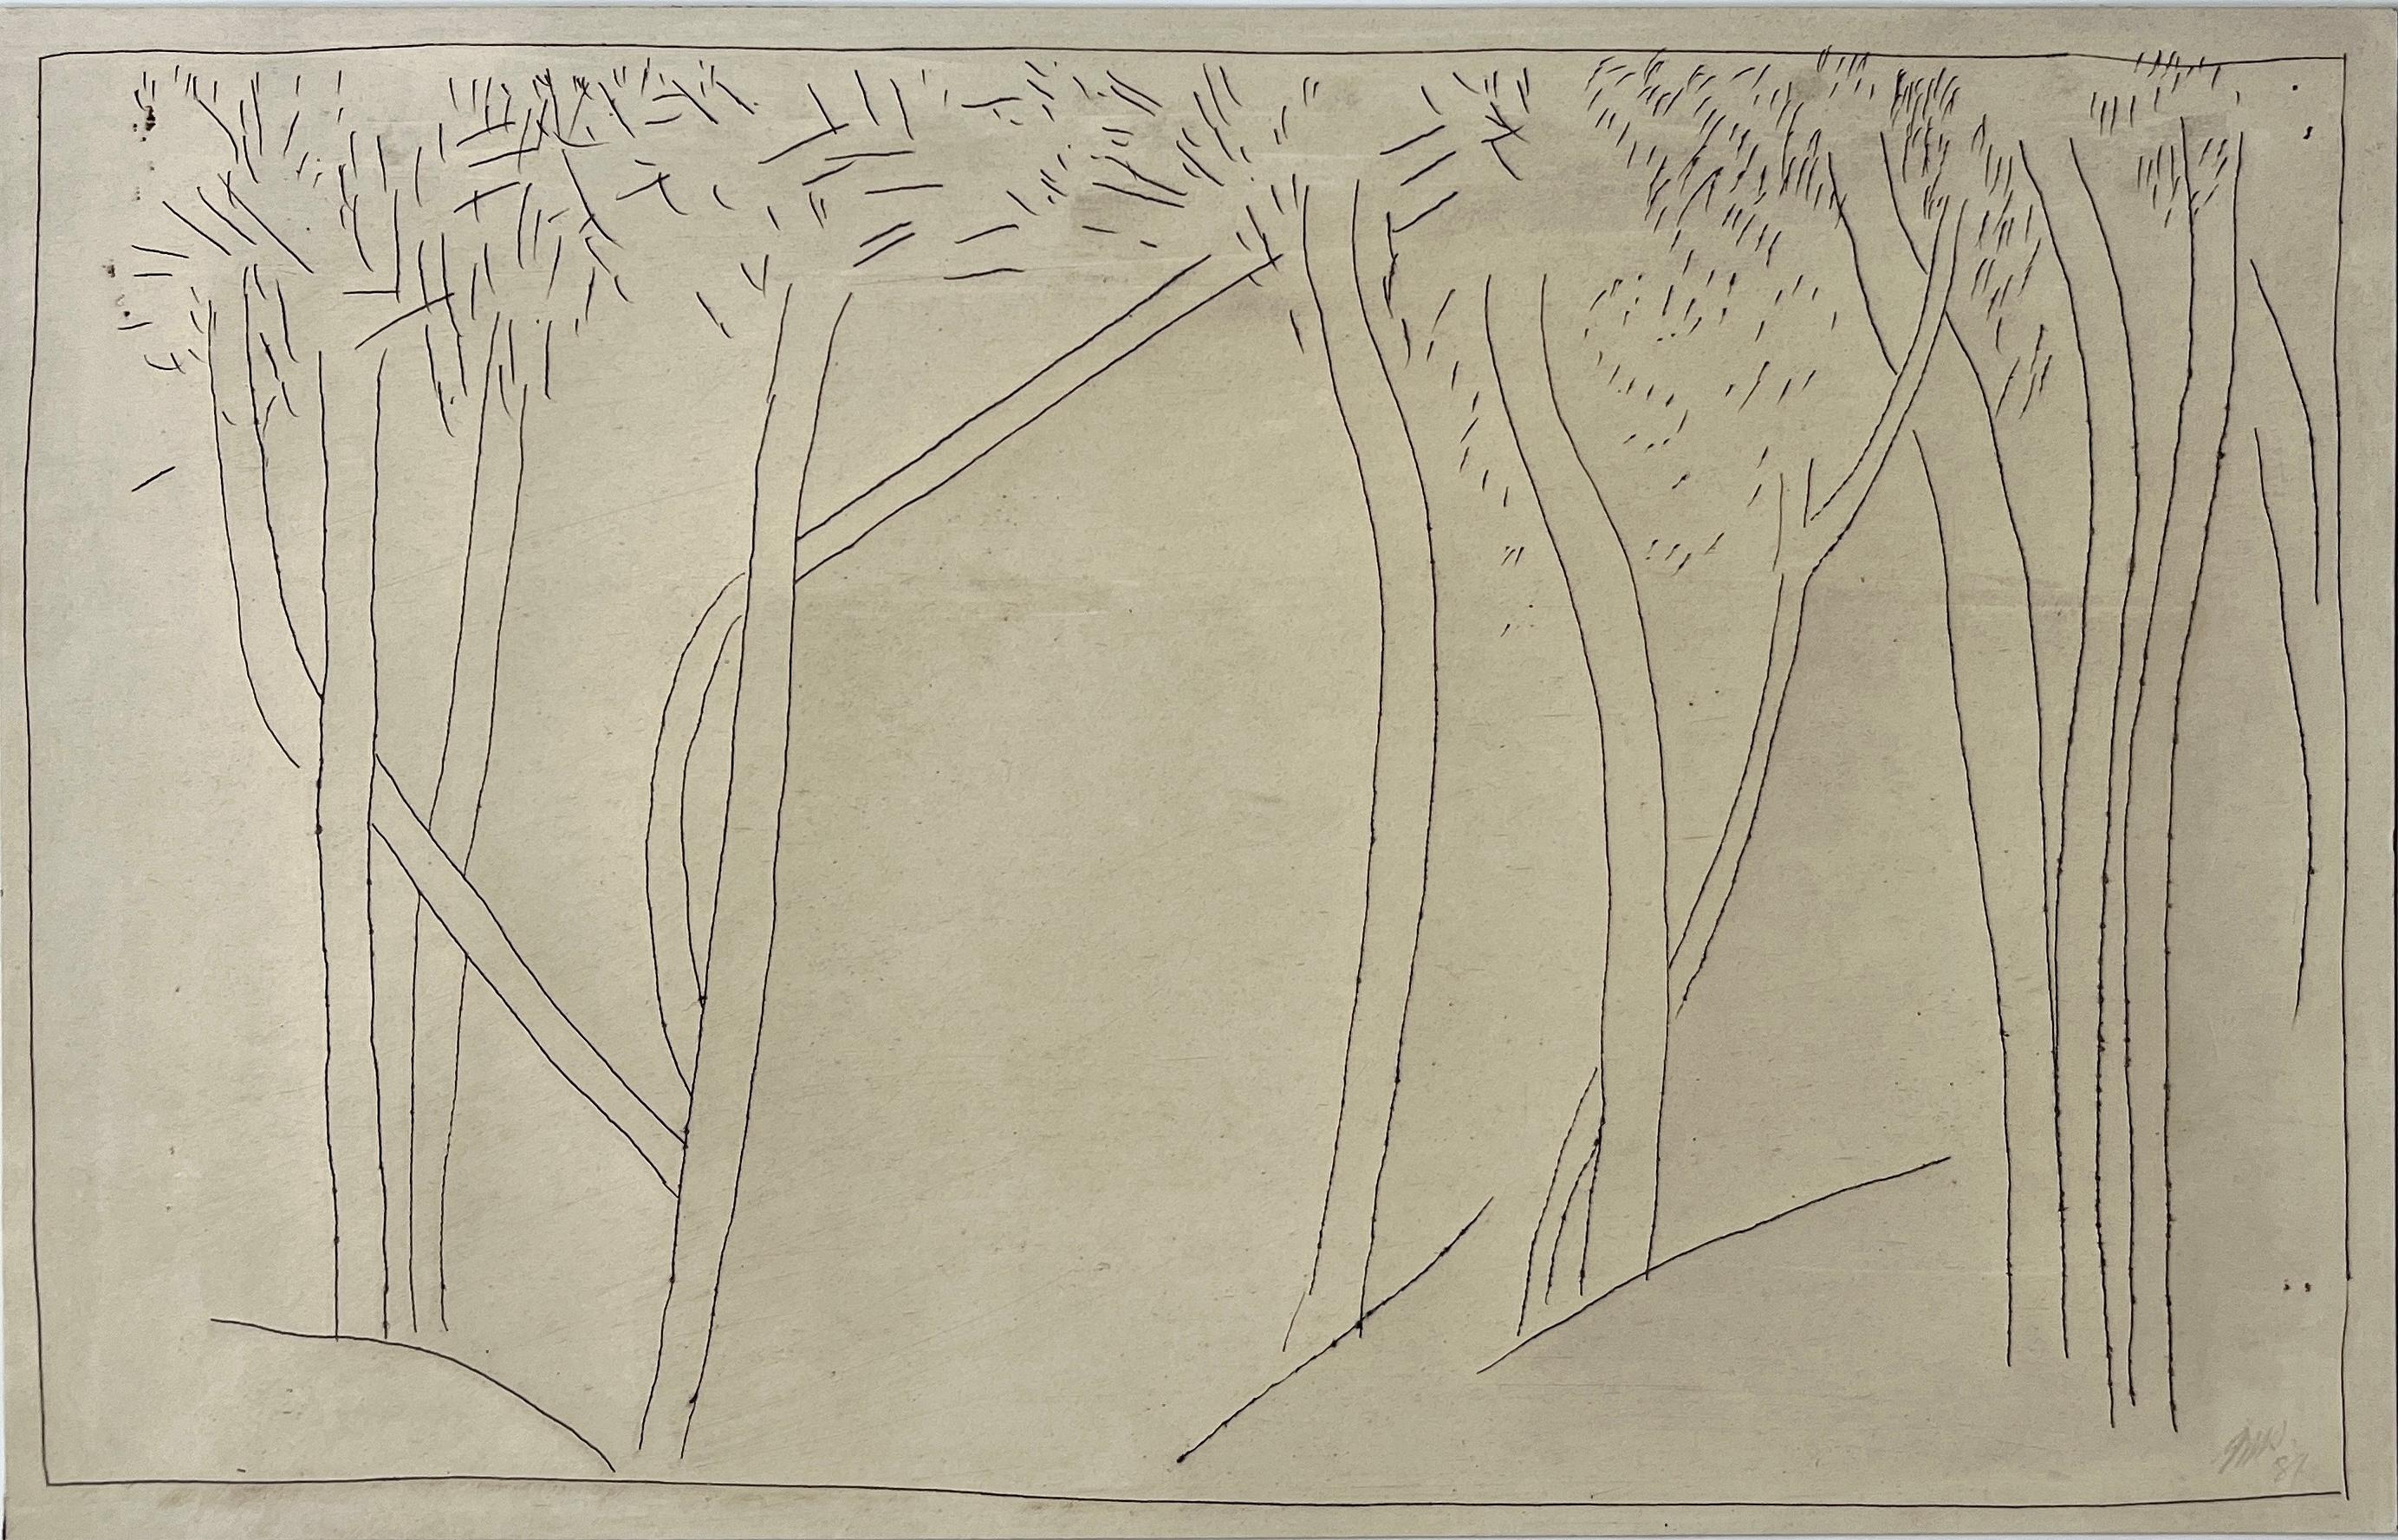 Jack Hooper
"Paysage d'arbres"
1981
Encre sur papier glacé
11 "x7" sans cadre
Signé et daté au crayon en bas à droite

Embrassez la beauté sereine de la Nature à travers ce dessin abstrait de l'artiste Jack Hooper. Inspiré par l'essence de la